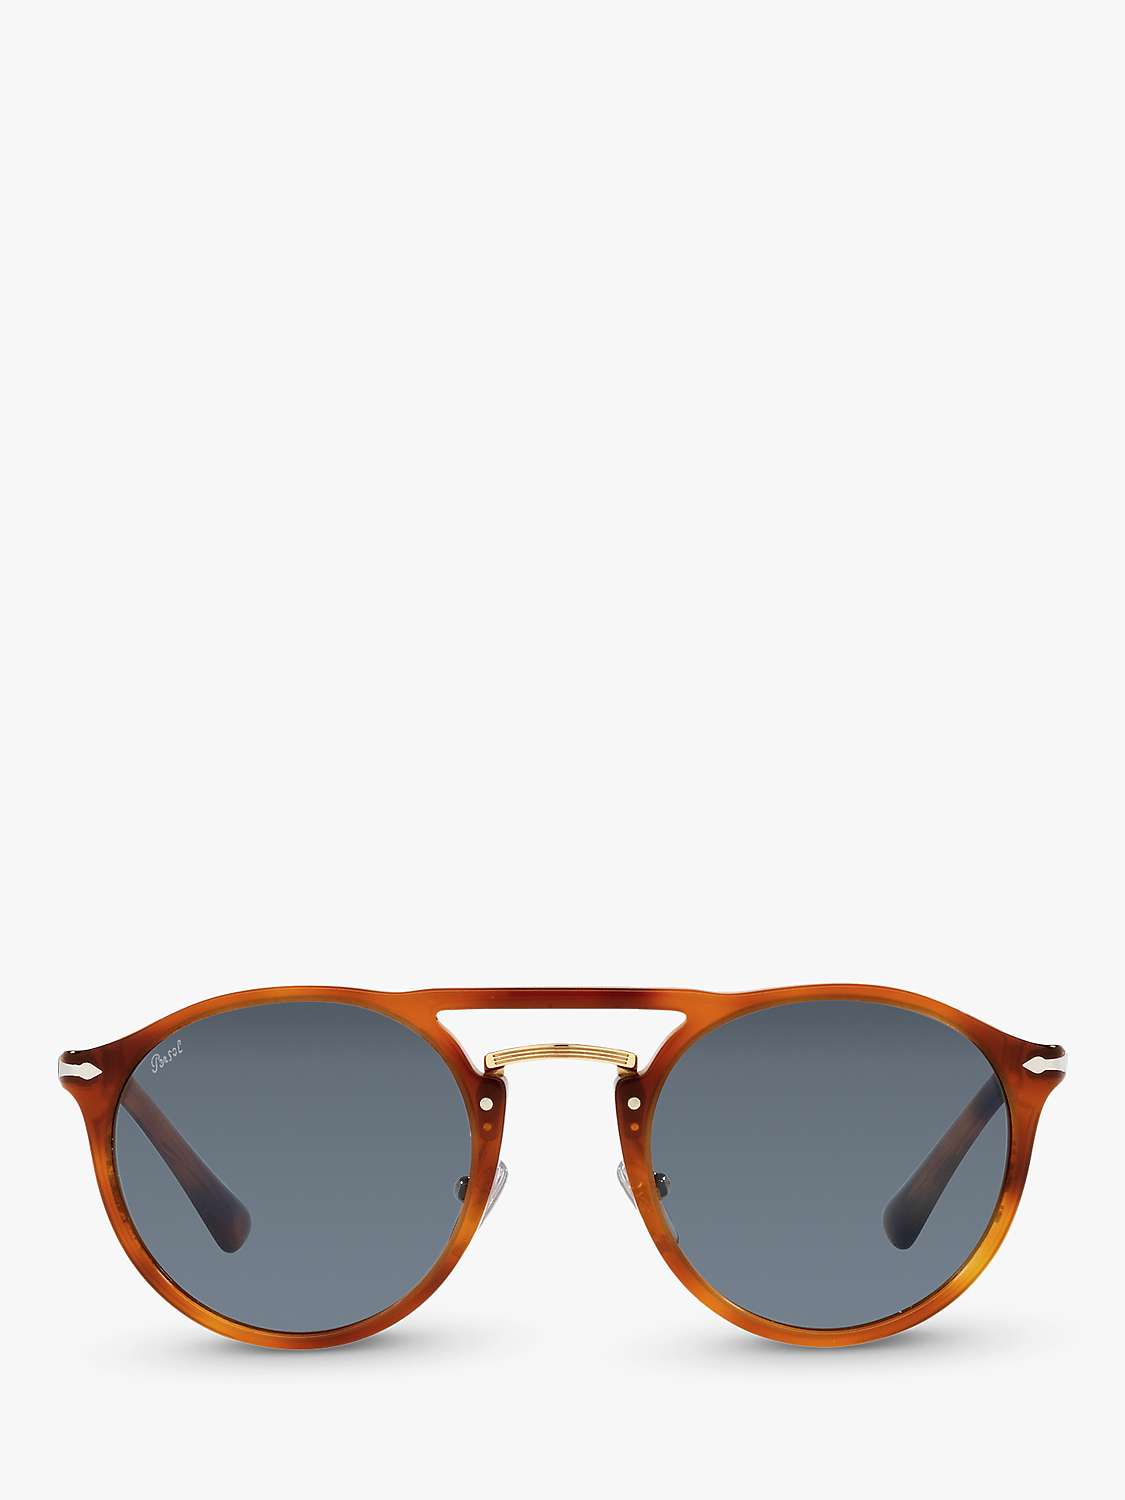 Buy Persol PO3264S Unisex Phantos Sunglasses, Terra Di Siena Online at johnlewis.com